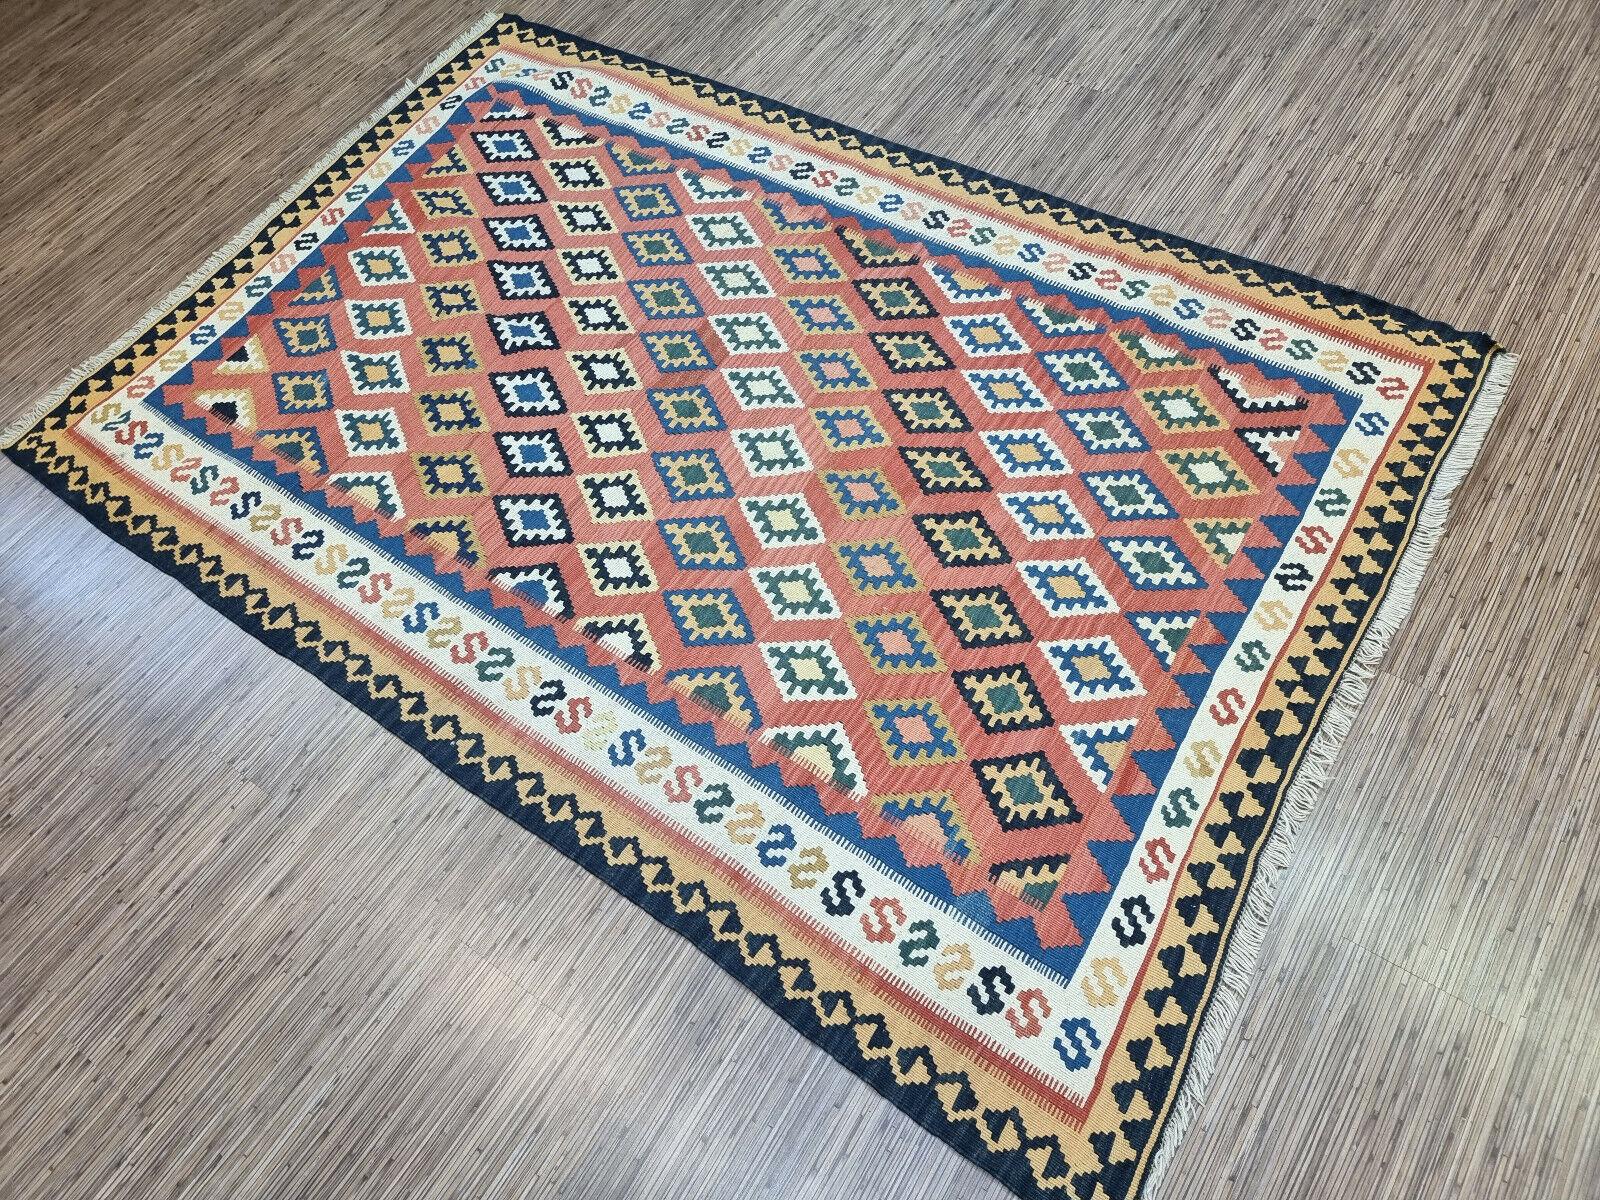 Mit diesem handgefertigten Ardabil Kilim-Teppich im persischen Vintage-Stil verleihen Sie Ihrem Raum einen Hauch von Farbe und Charme. Dieser flachgewebte Wollteppich mit den Maßen 4,9' x 7,2' ist ein atemberaubendes Kunstwerk, das die komplizierte